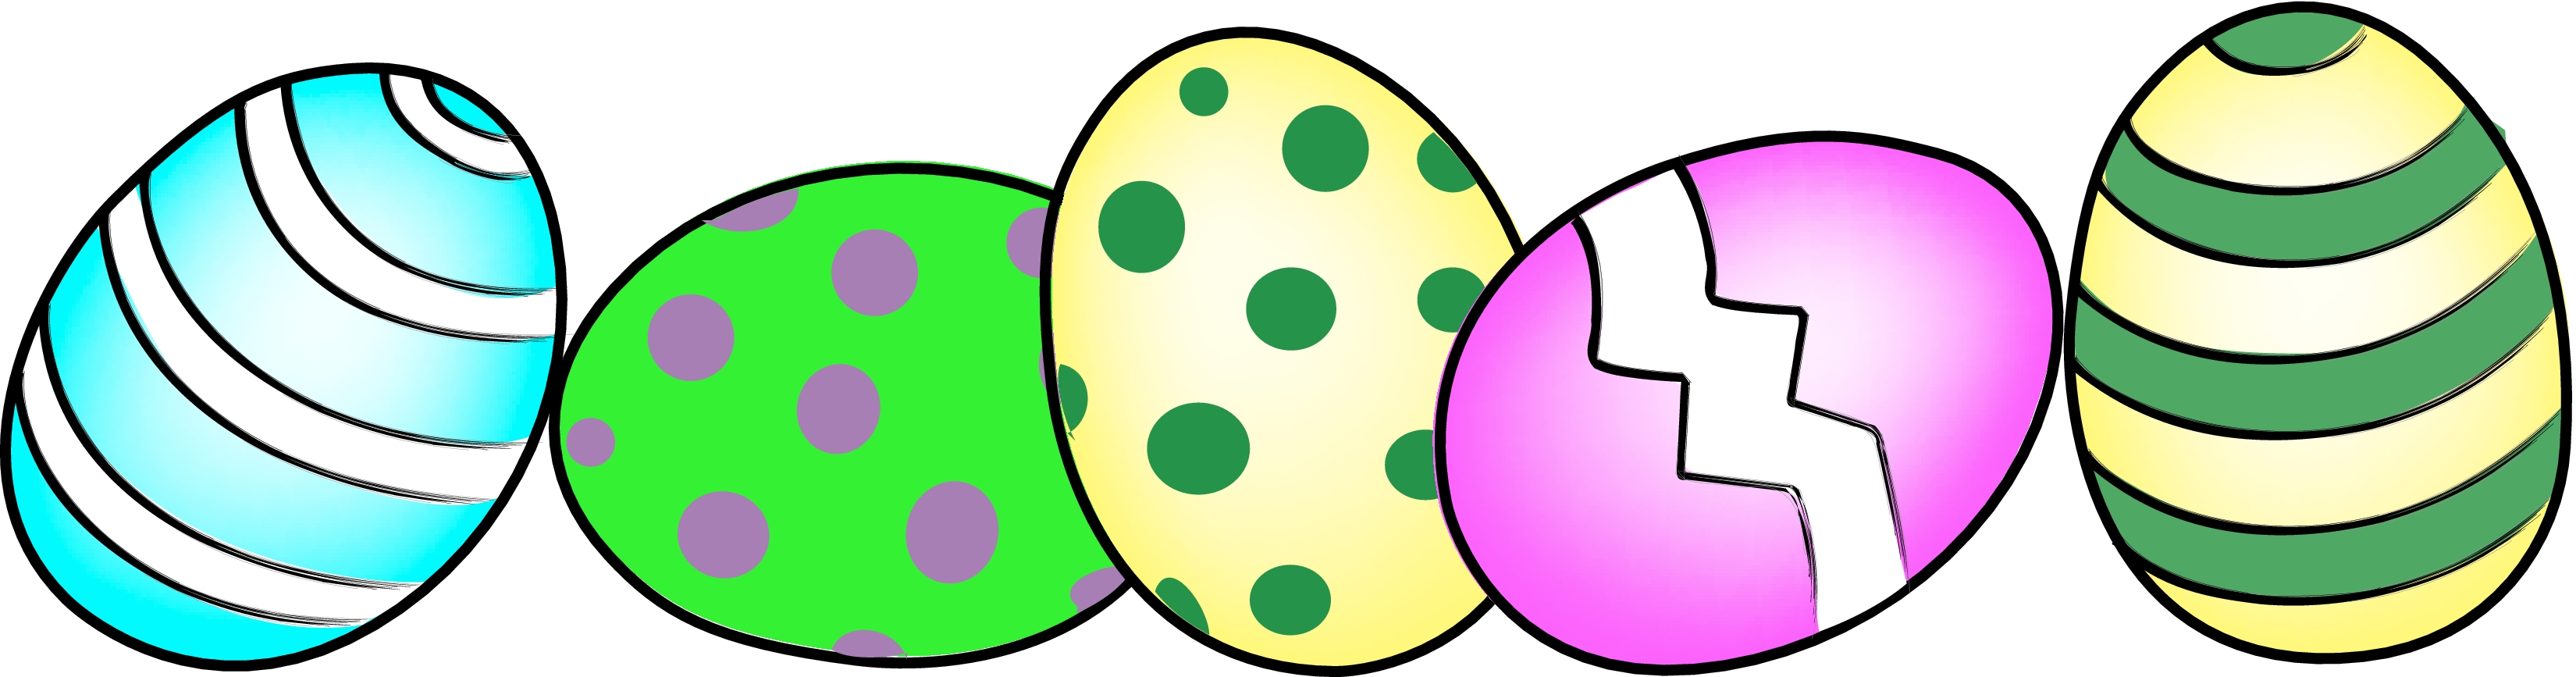 Free Easter Egg Clip Art